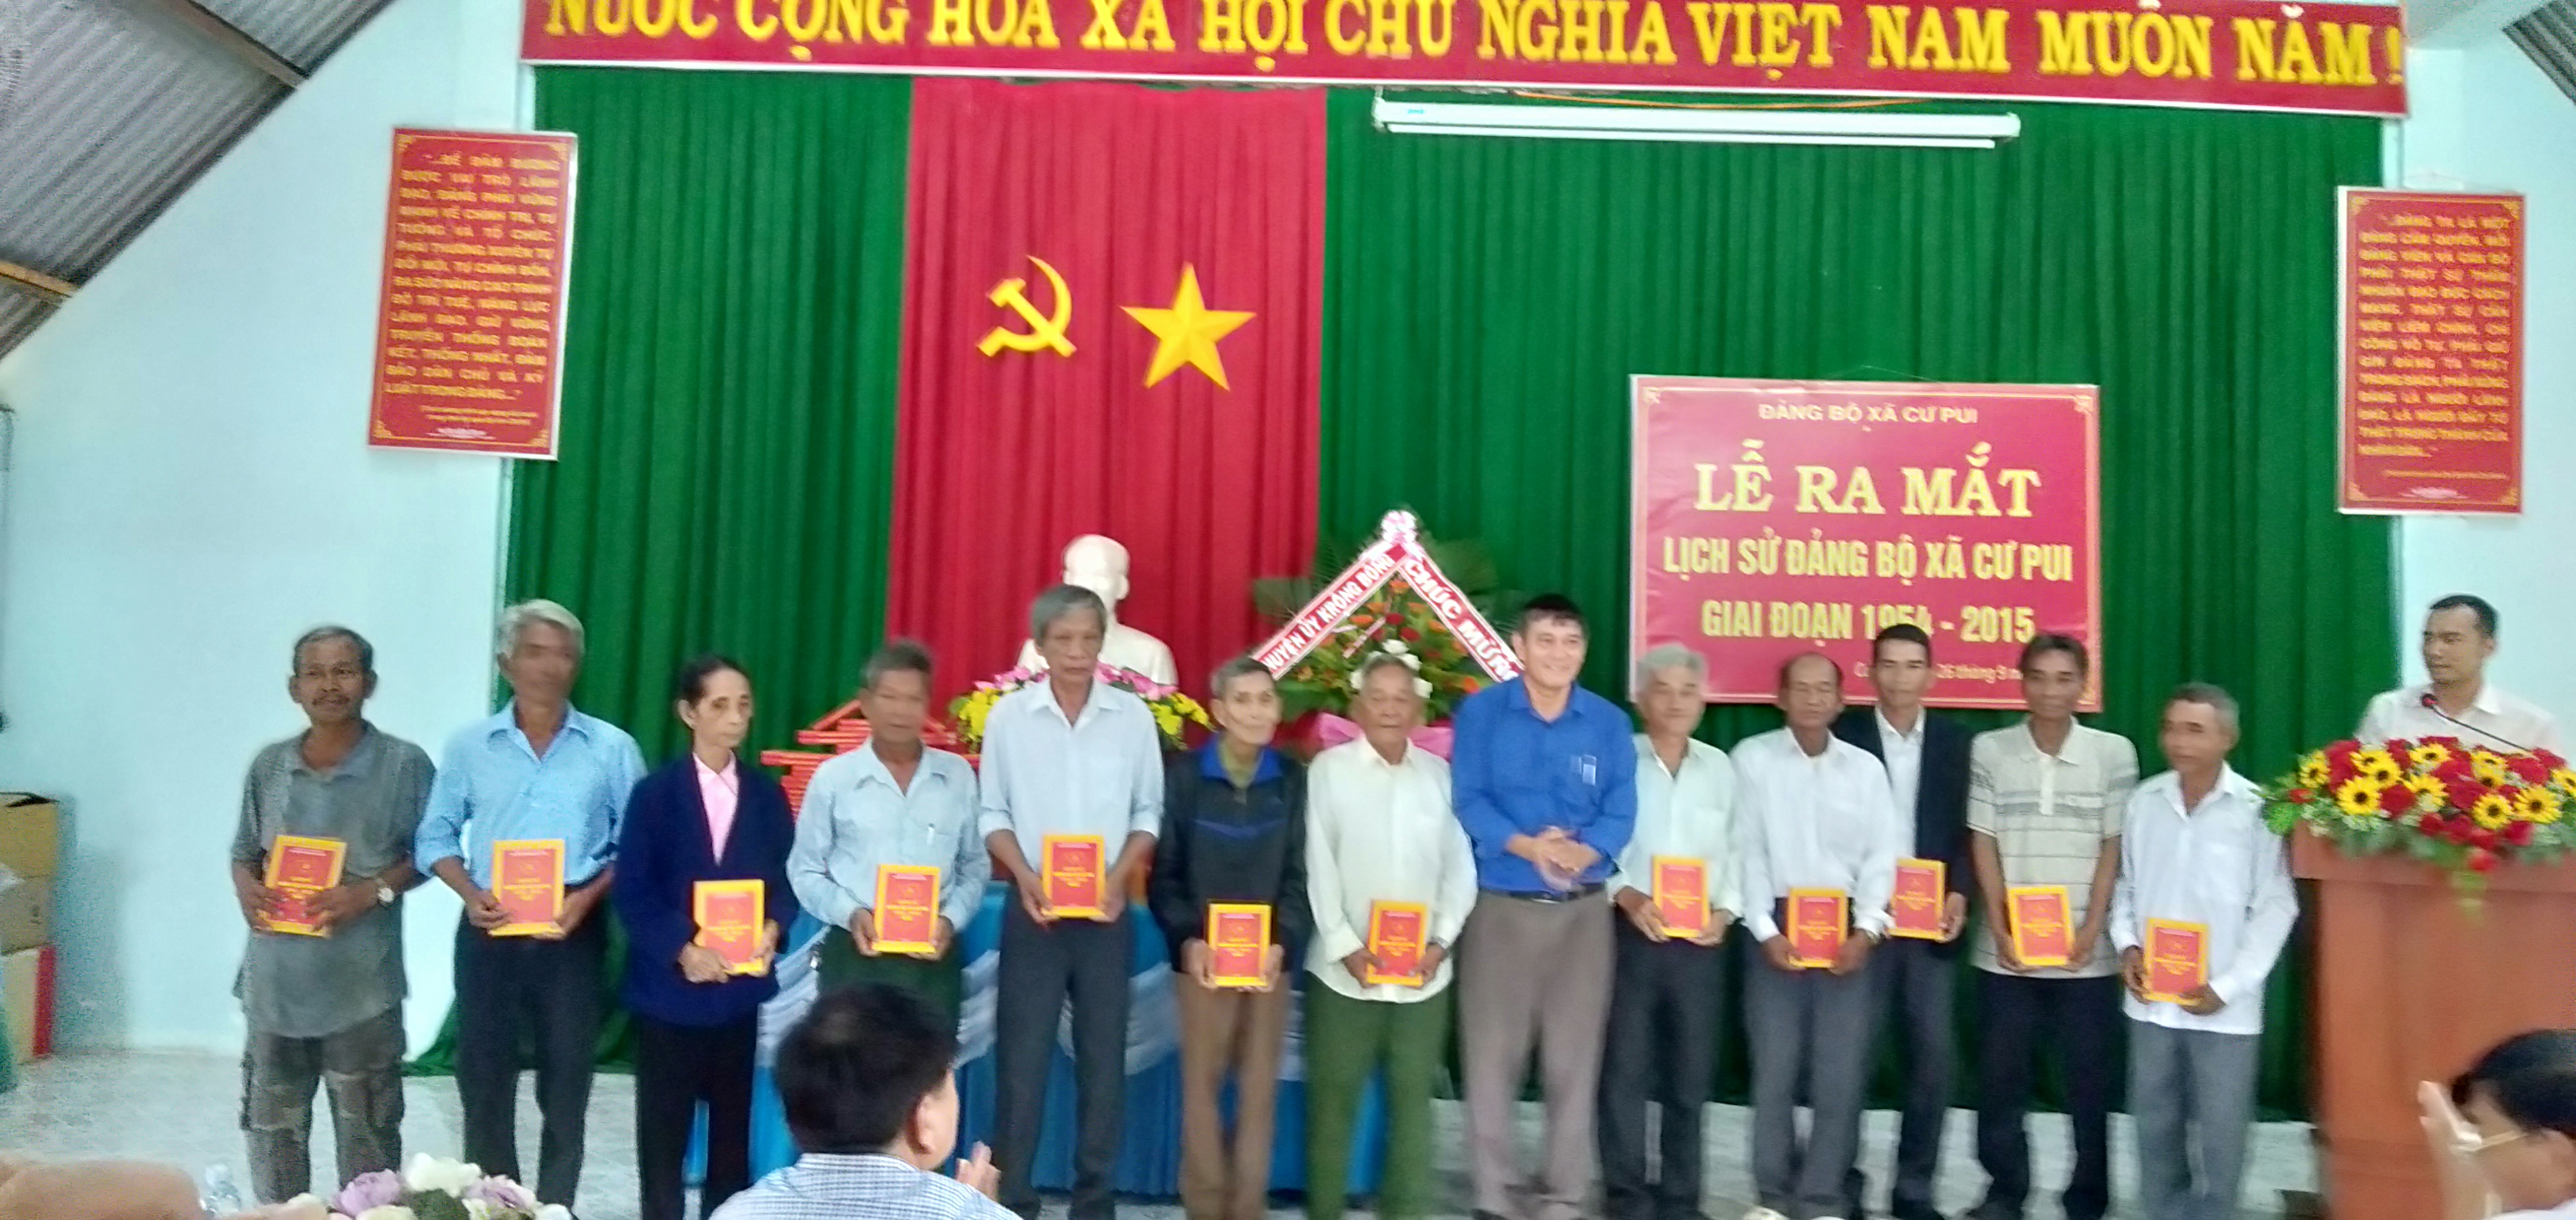 Lễ ra mắt, phát hành cuốn Lịch sử Đảng bộ xã Cư Pui, huyện Krông Bông giai đoạn 1954-2015